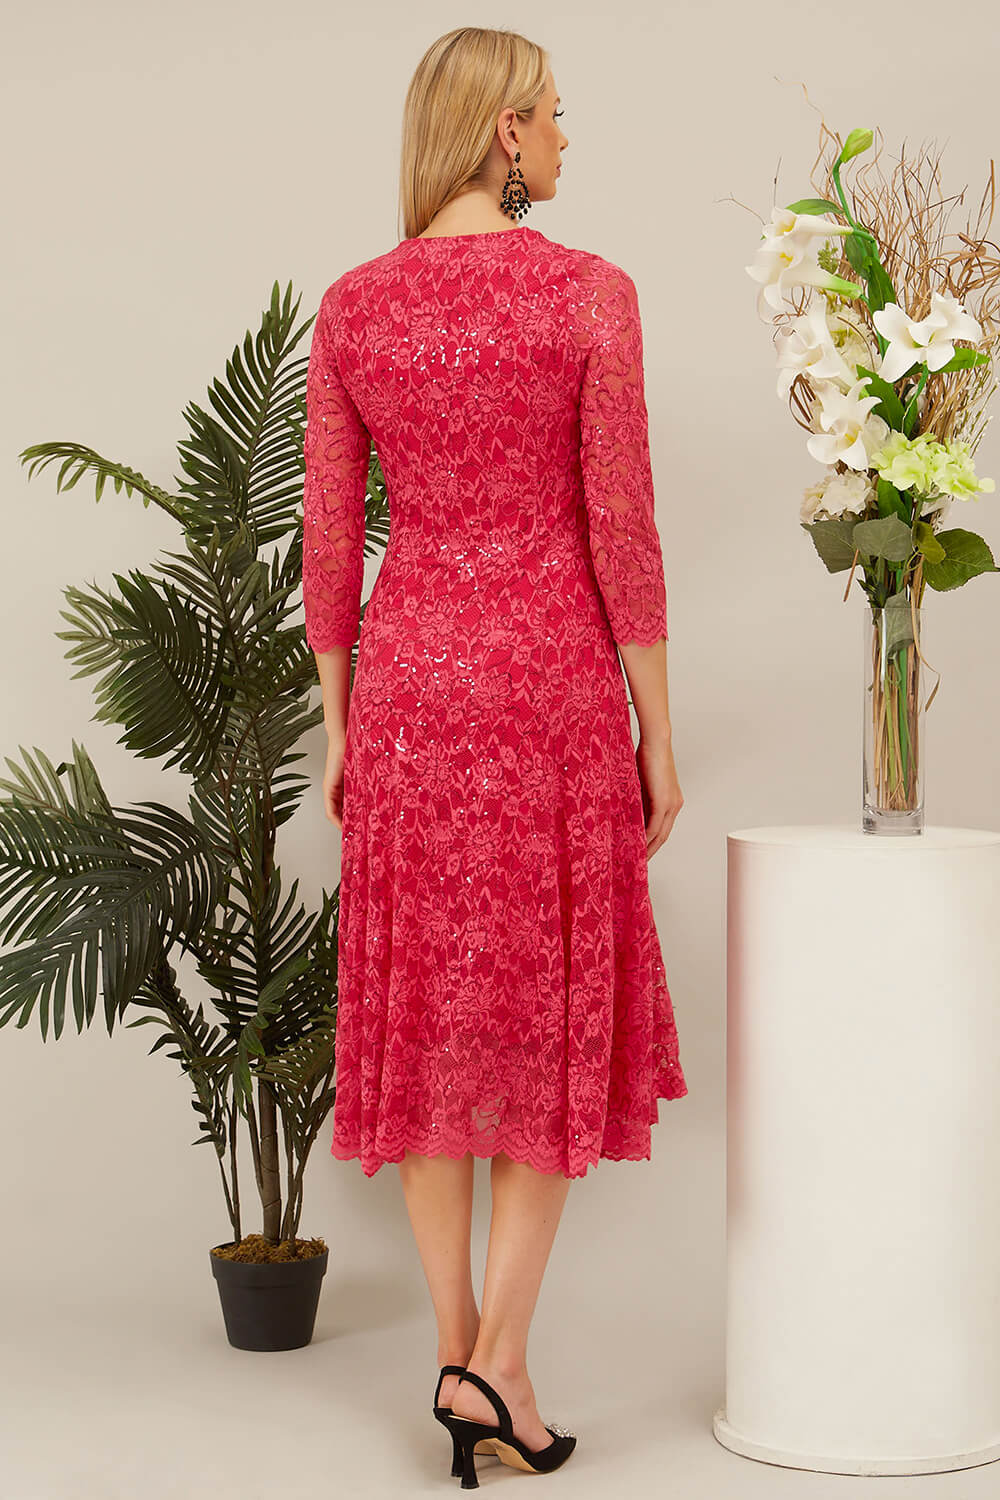 CERISE Julianna Sequin Lace Midi Dress, Image 2 of 4